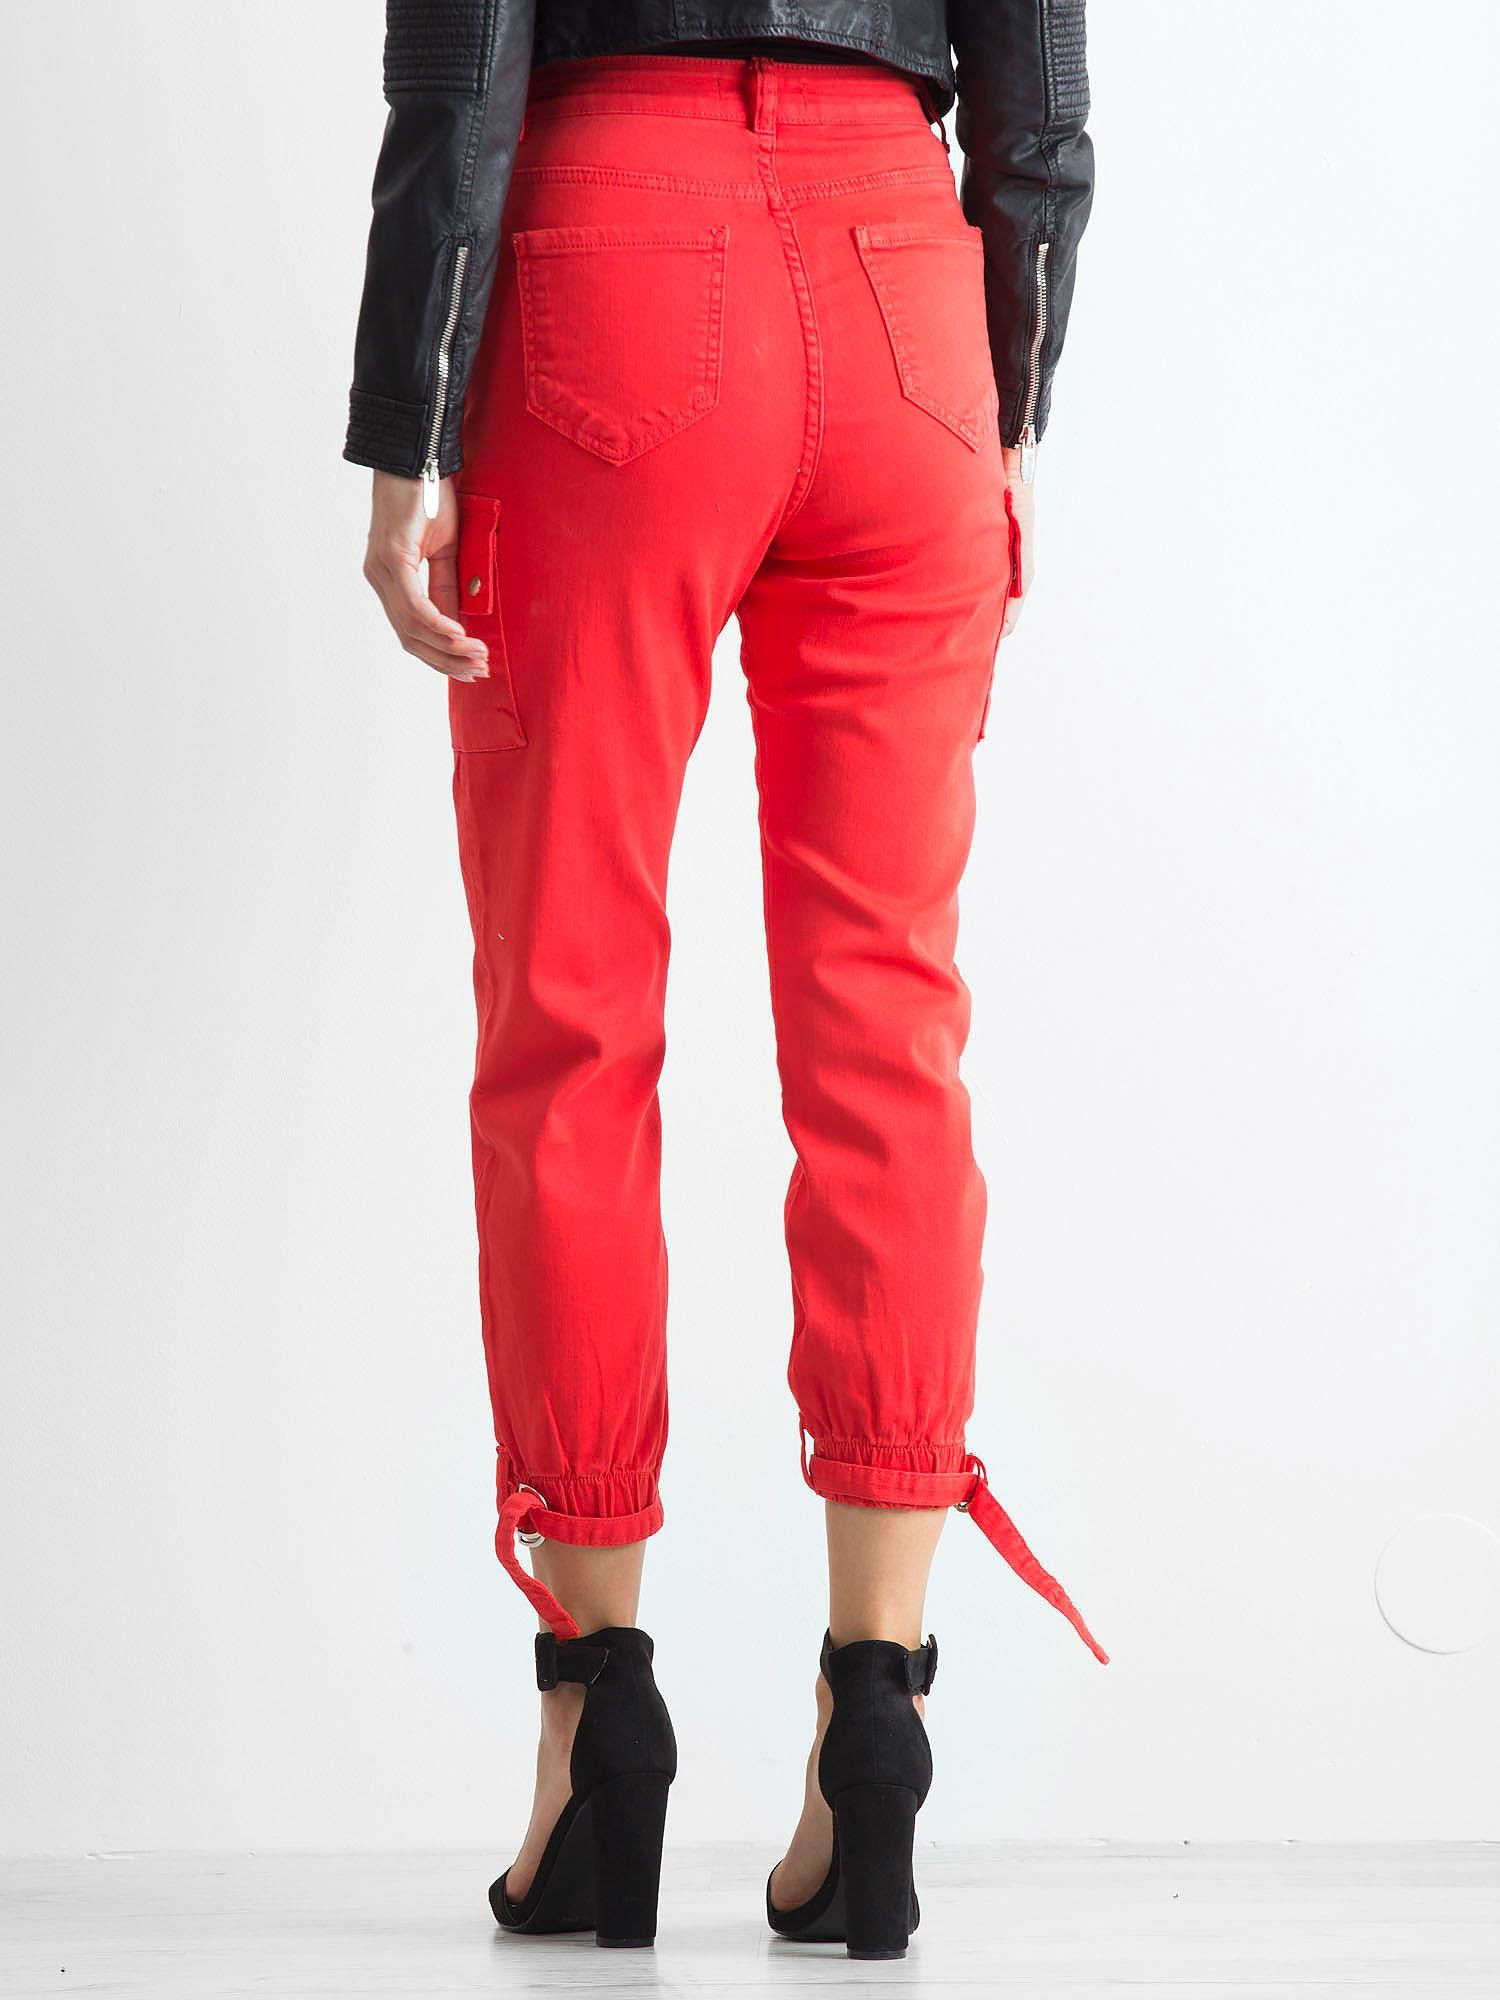 Kalhoty JMP SP červená 34 model 14827060 - FPrice